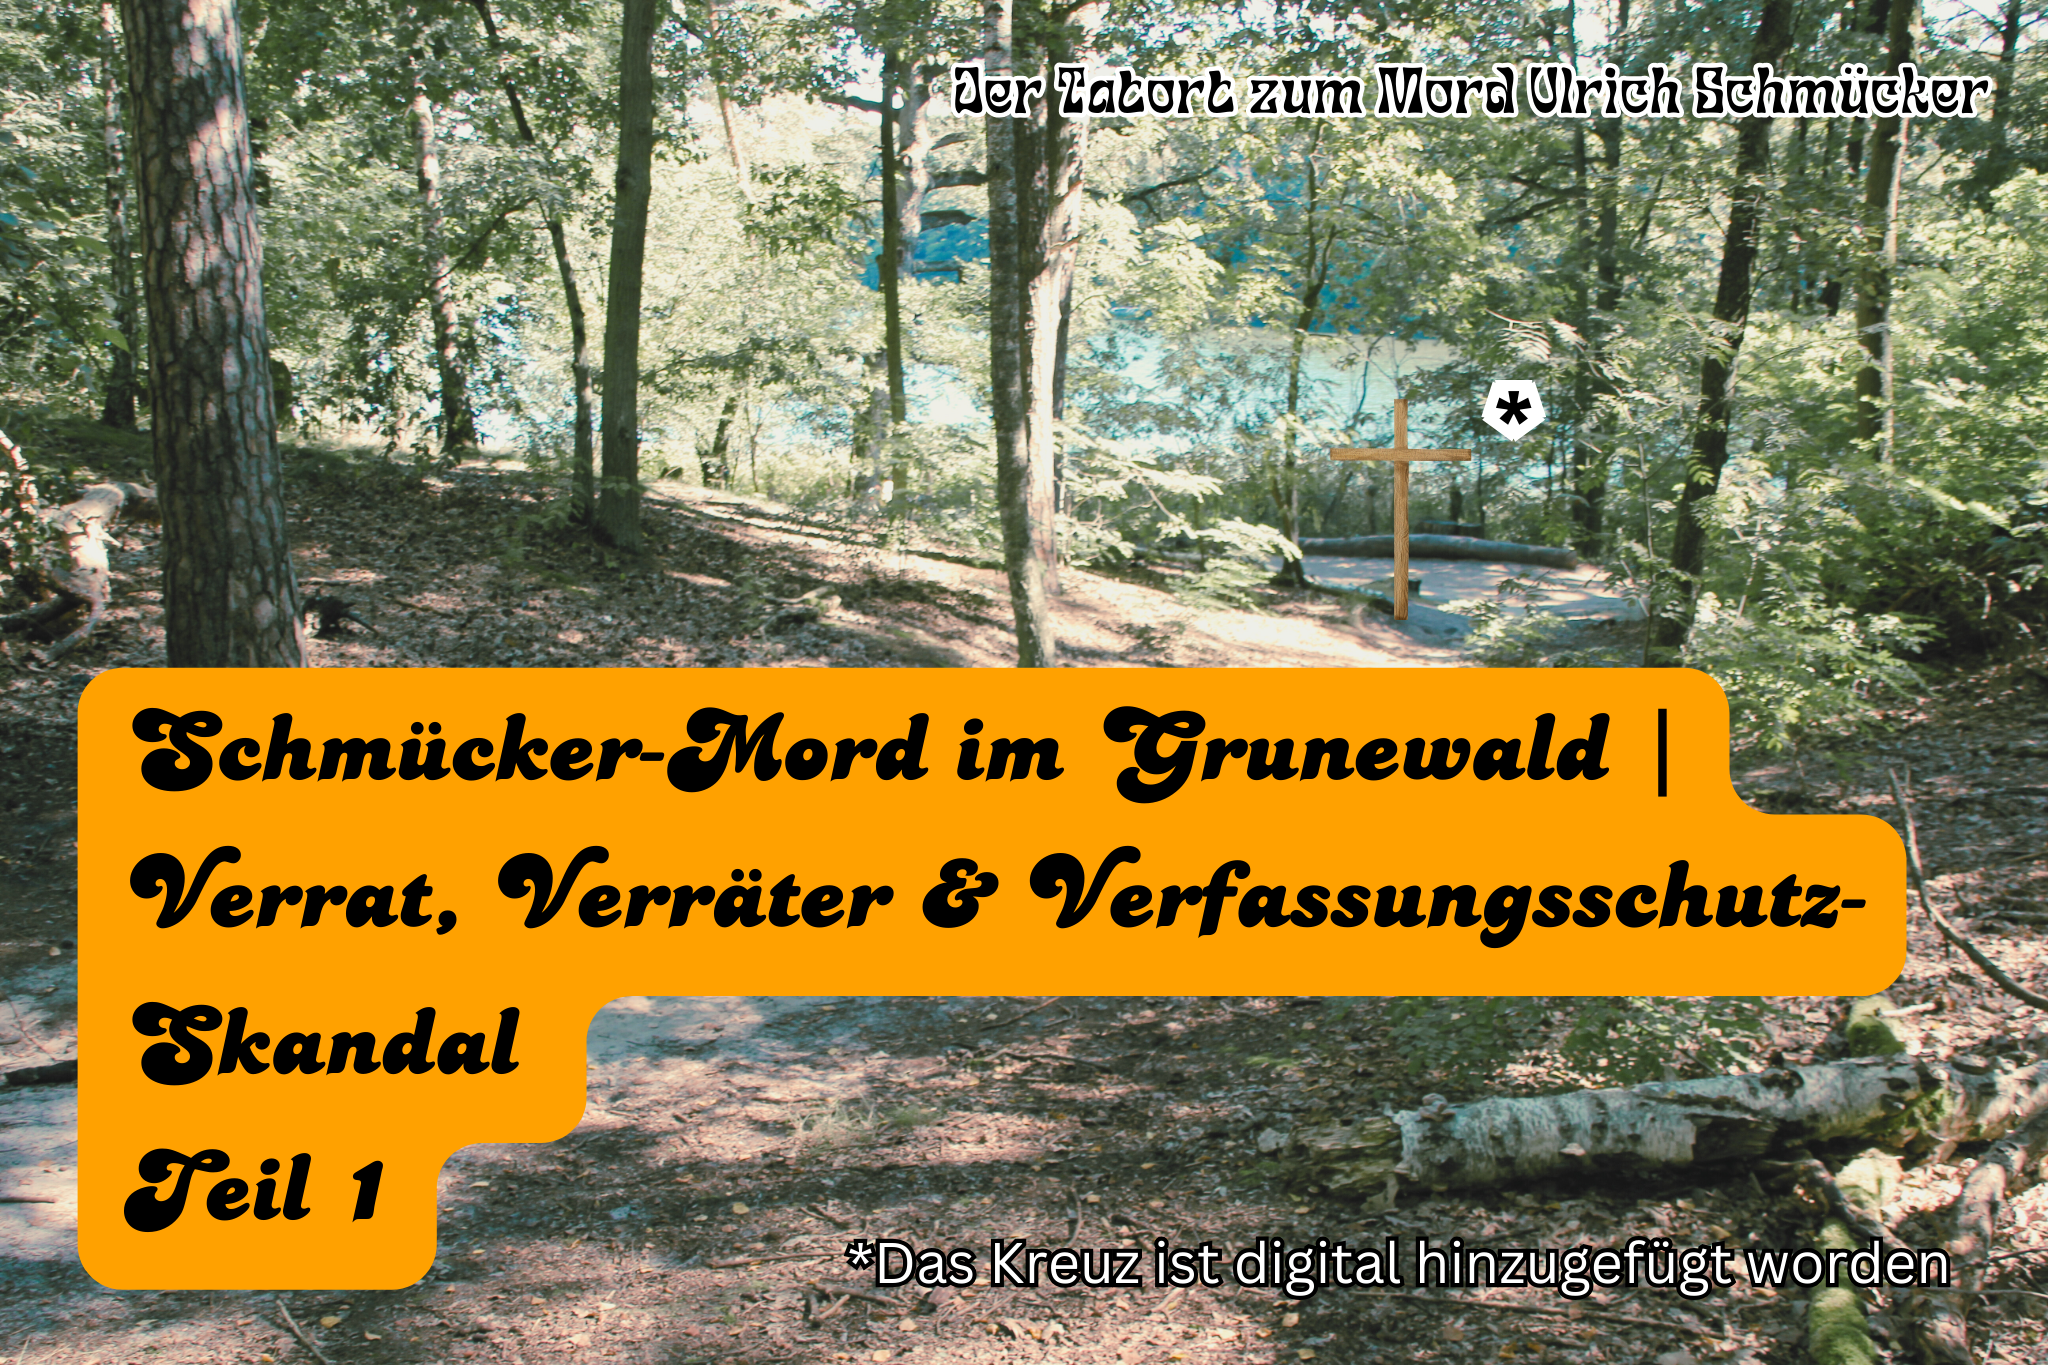 Schmücker-Mord im Grunewald | Verrat, Verräter & Verfassungsschutz-Skandal – Teil 1